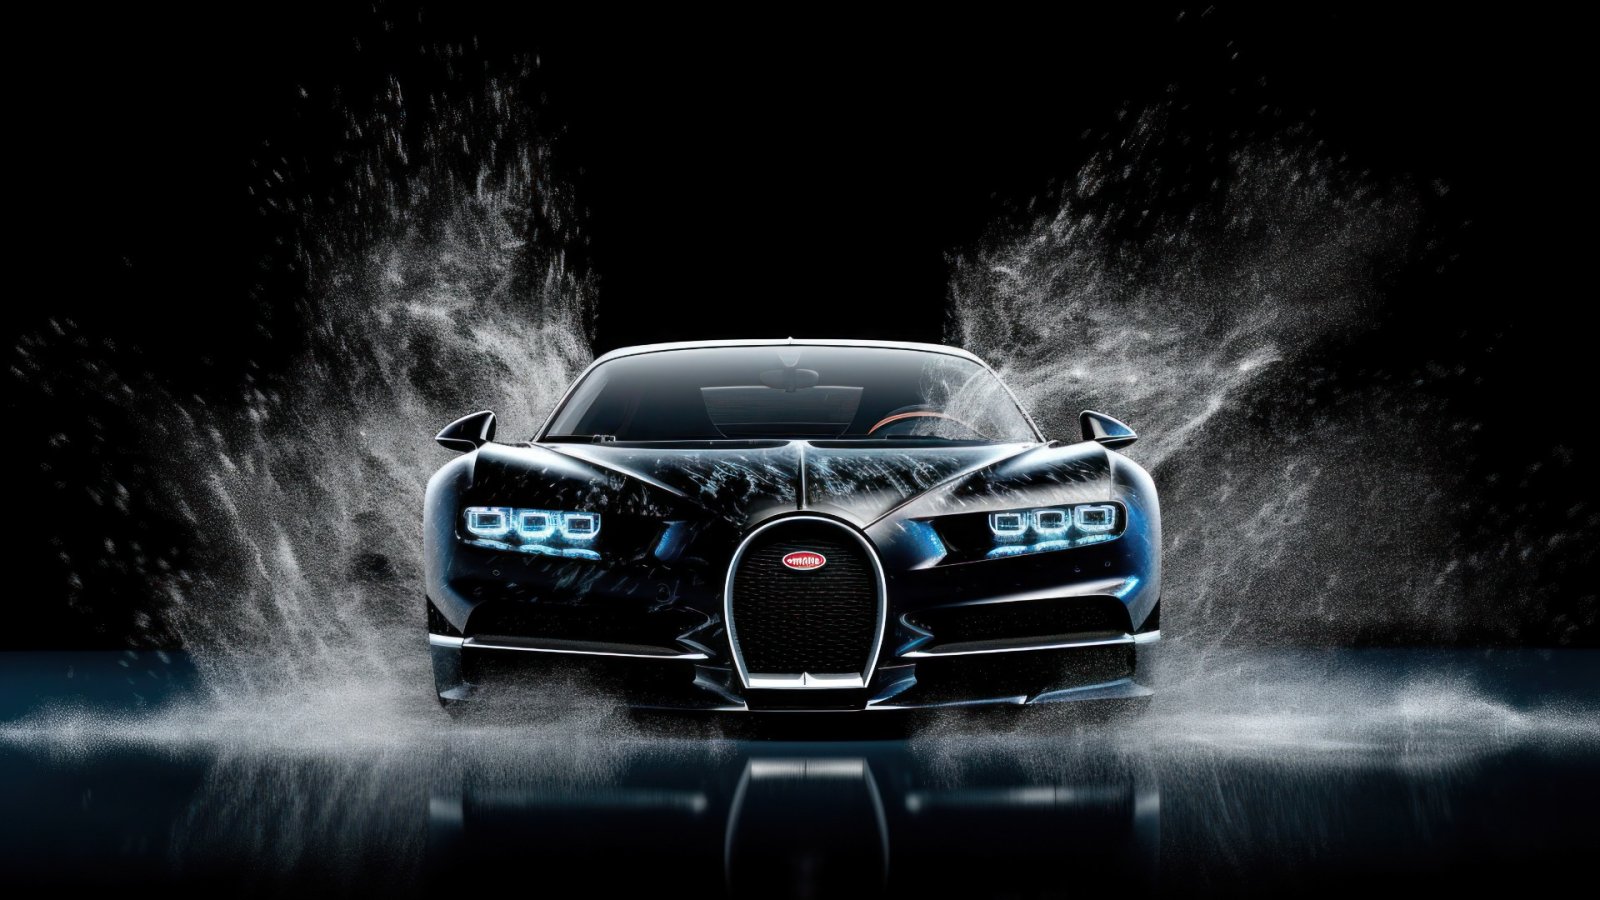 Bugatti takes the wraps off the groundbreaking Tourbillon Hybrid Hypercar